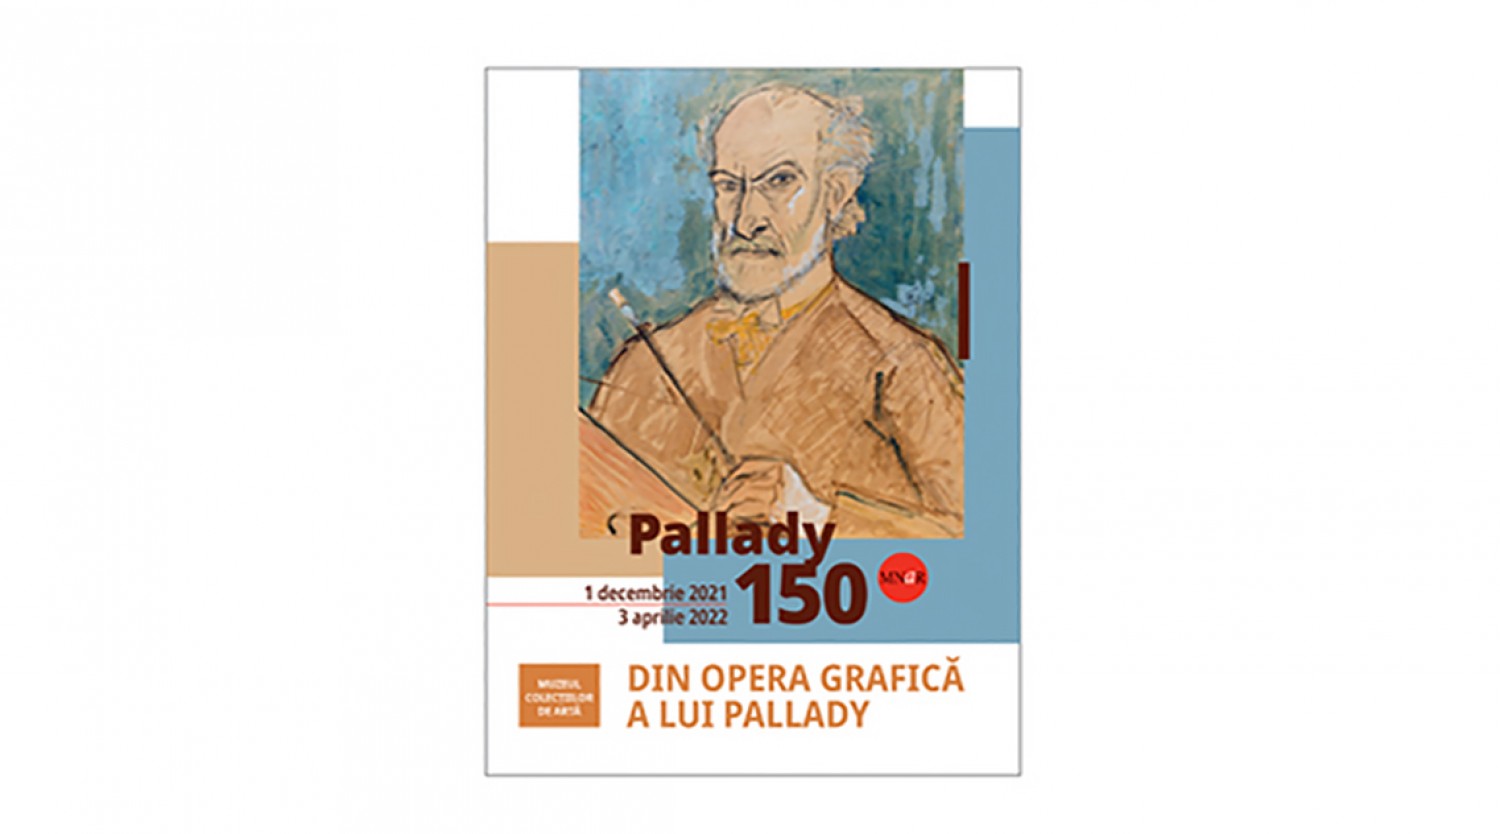 Eveniment Din opera grafica a lui Theodor Pallady - Pallady 150